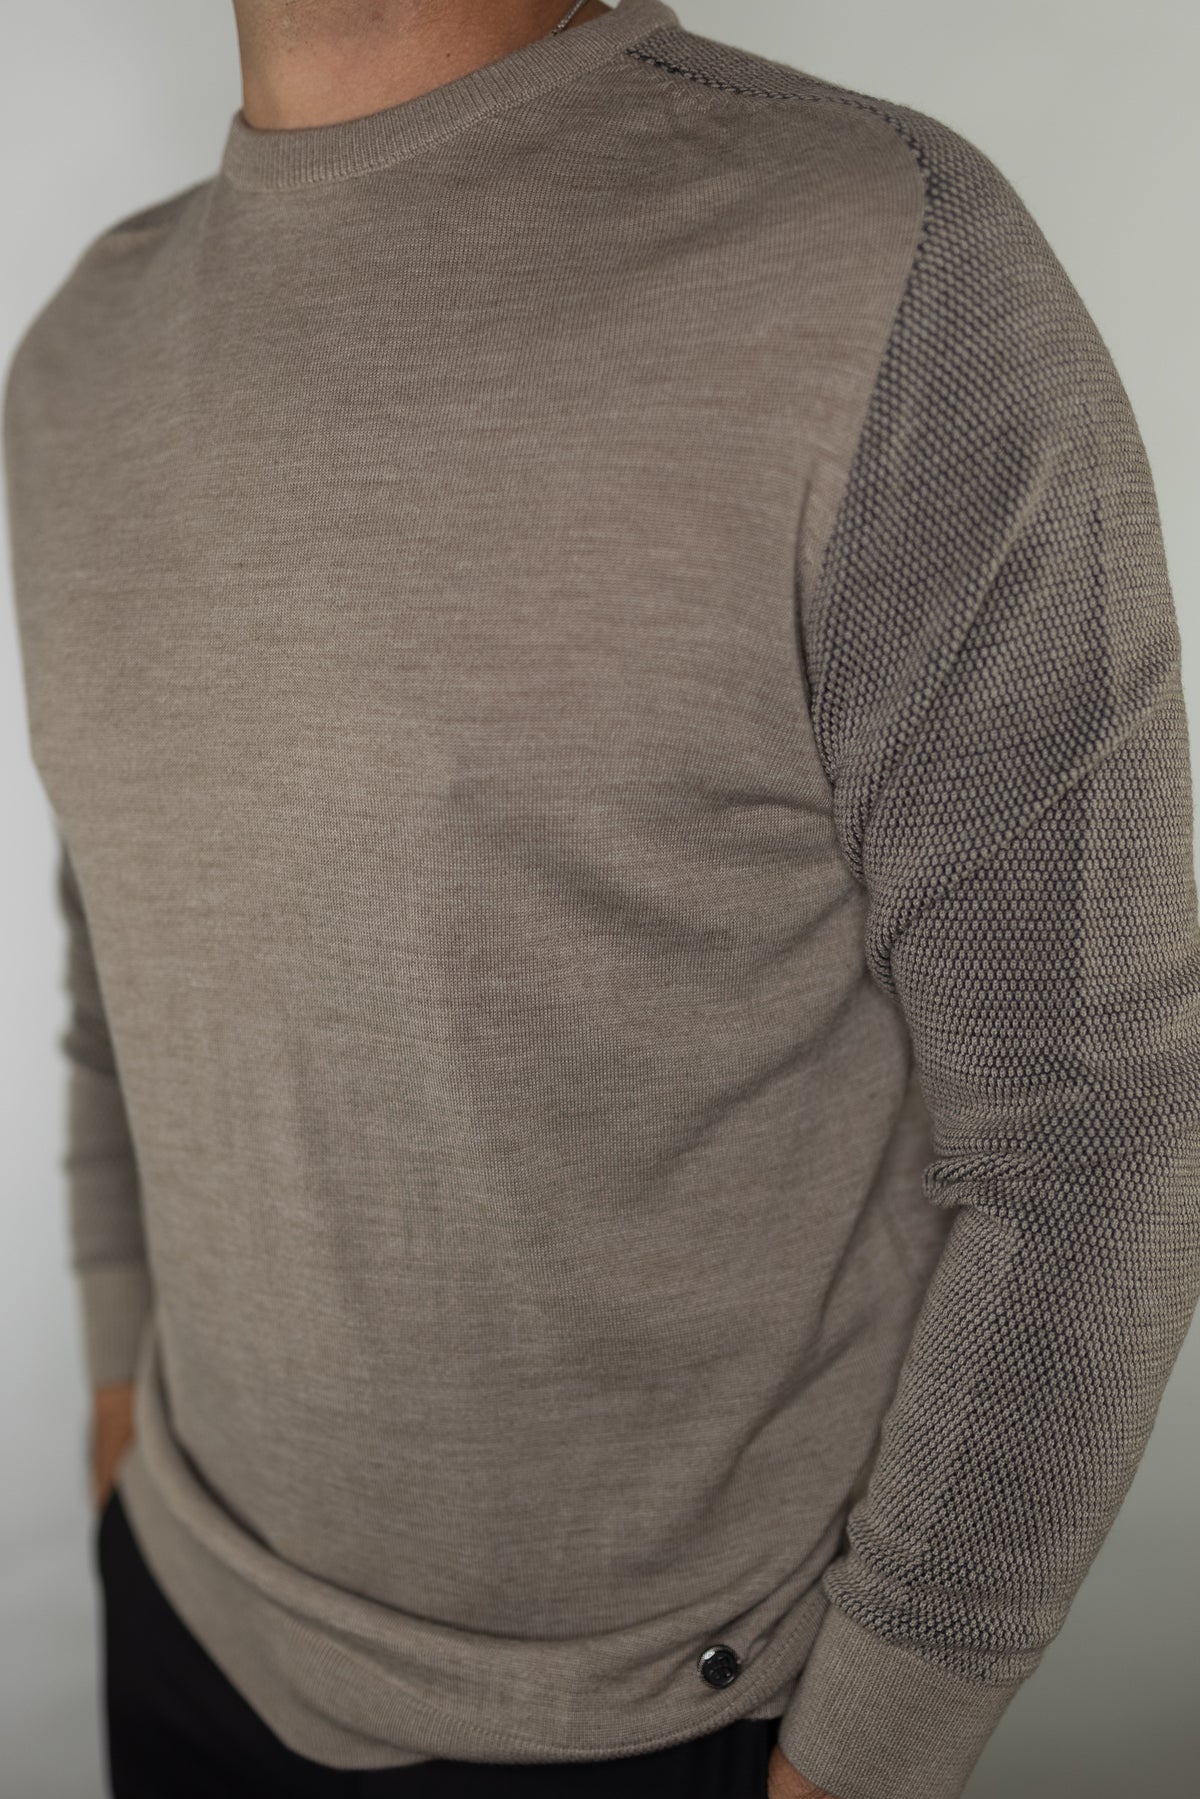 Garnet Raglan Sweater